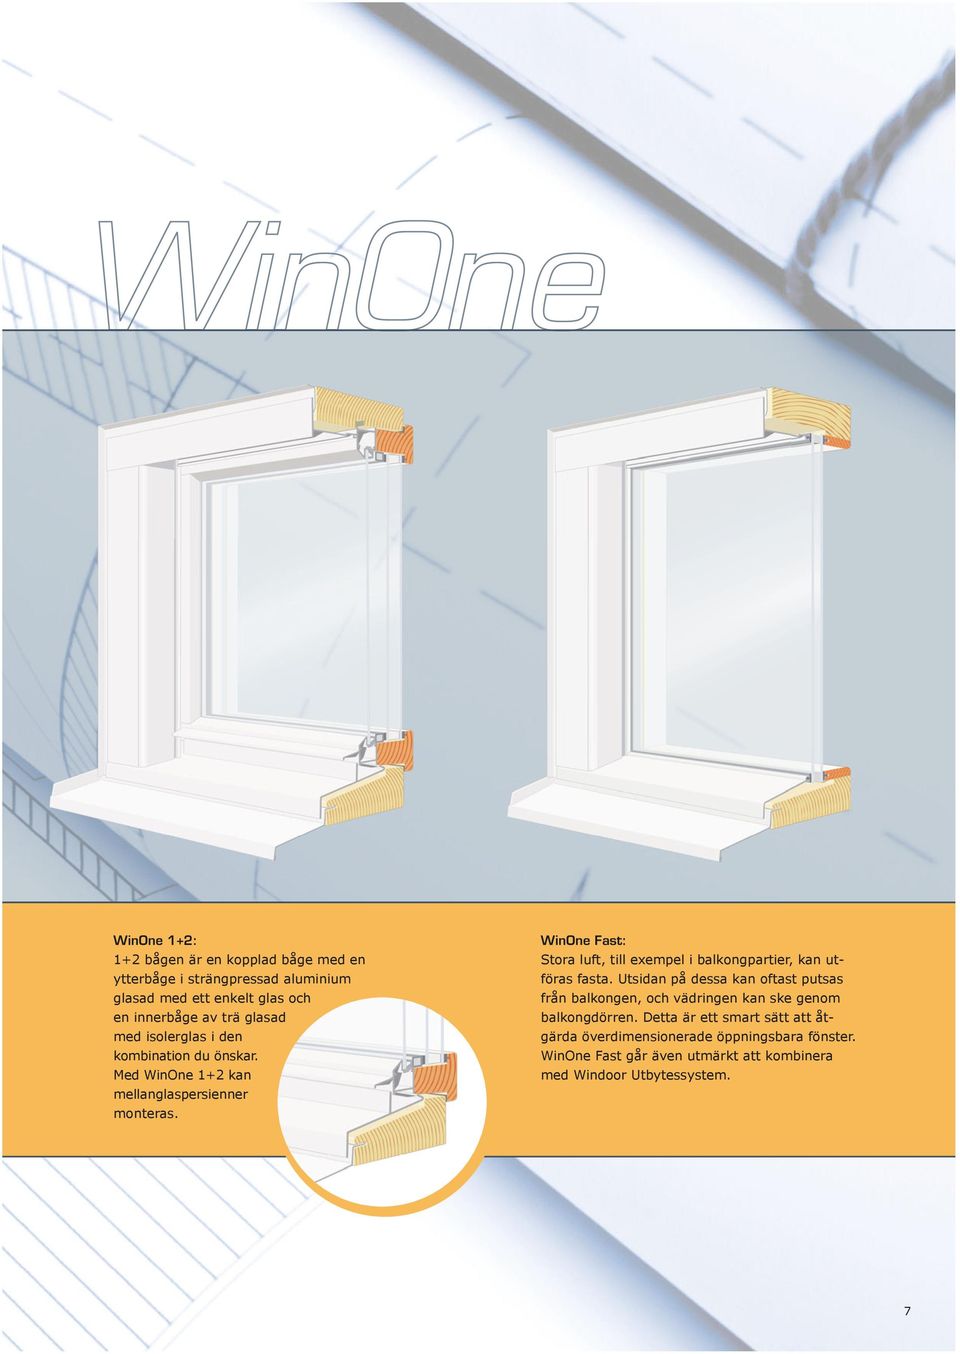 WinOne Fast: Stora luft, till exempel i balkongpartier, kan utföras fasta.